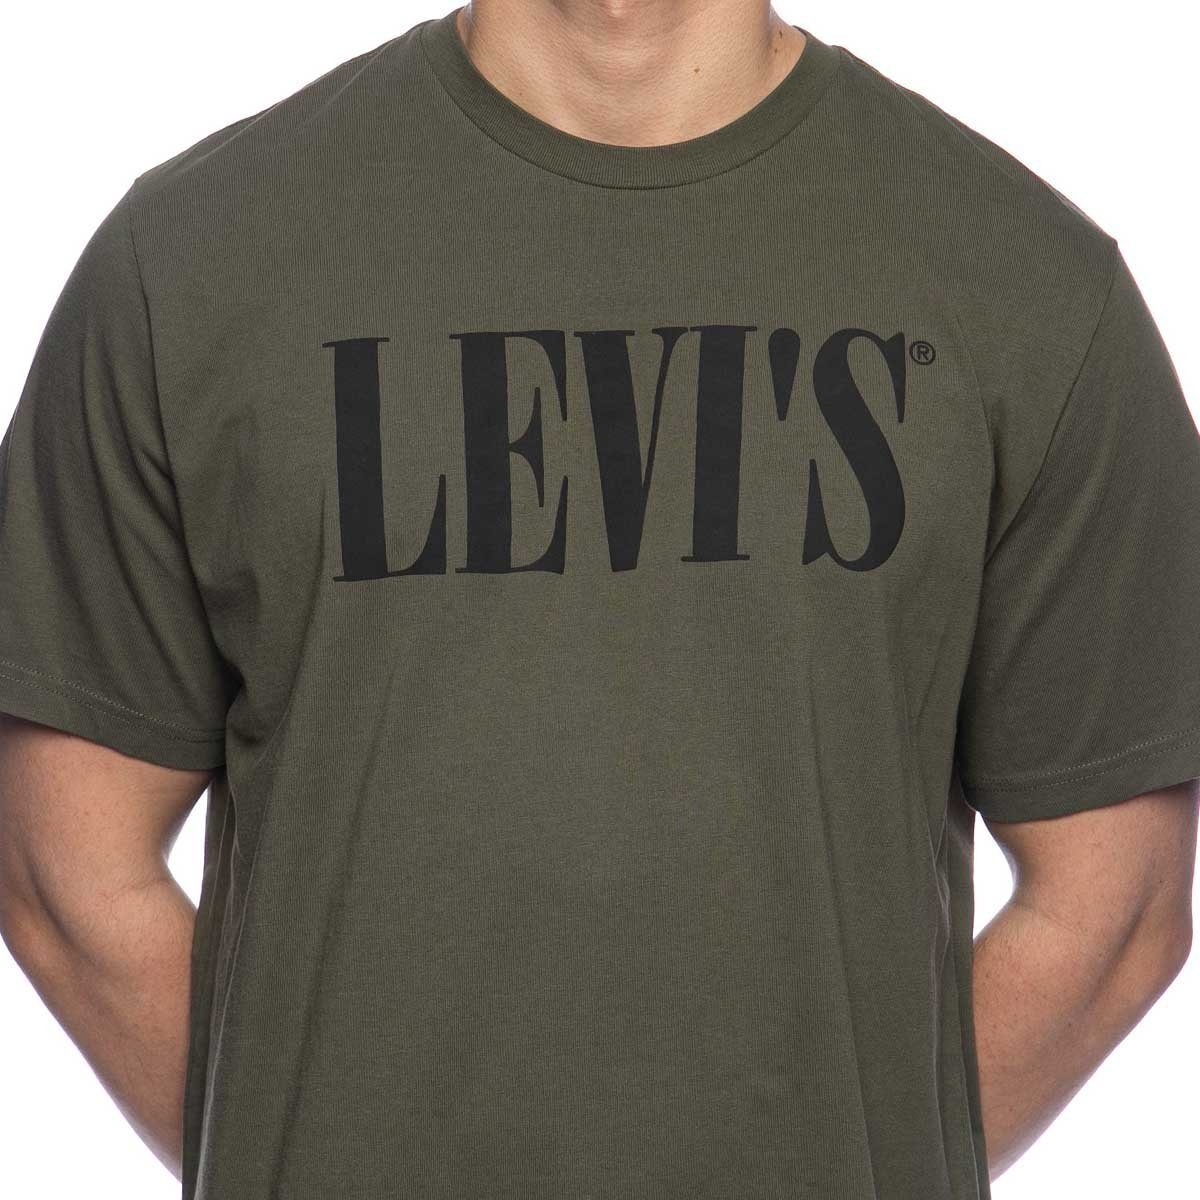 levi's khaki shirt